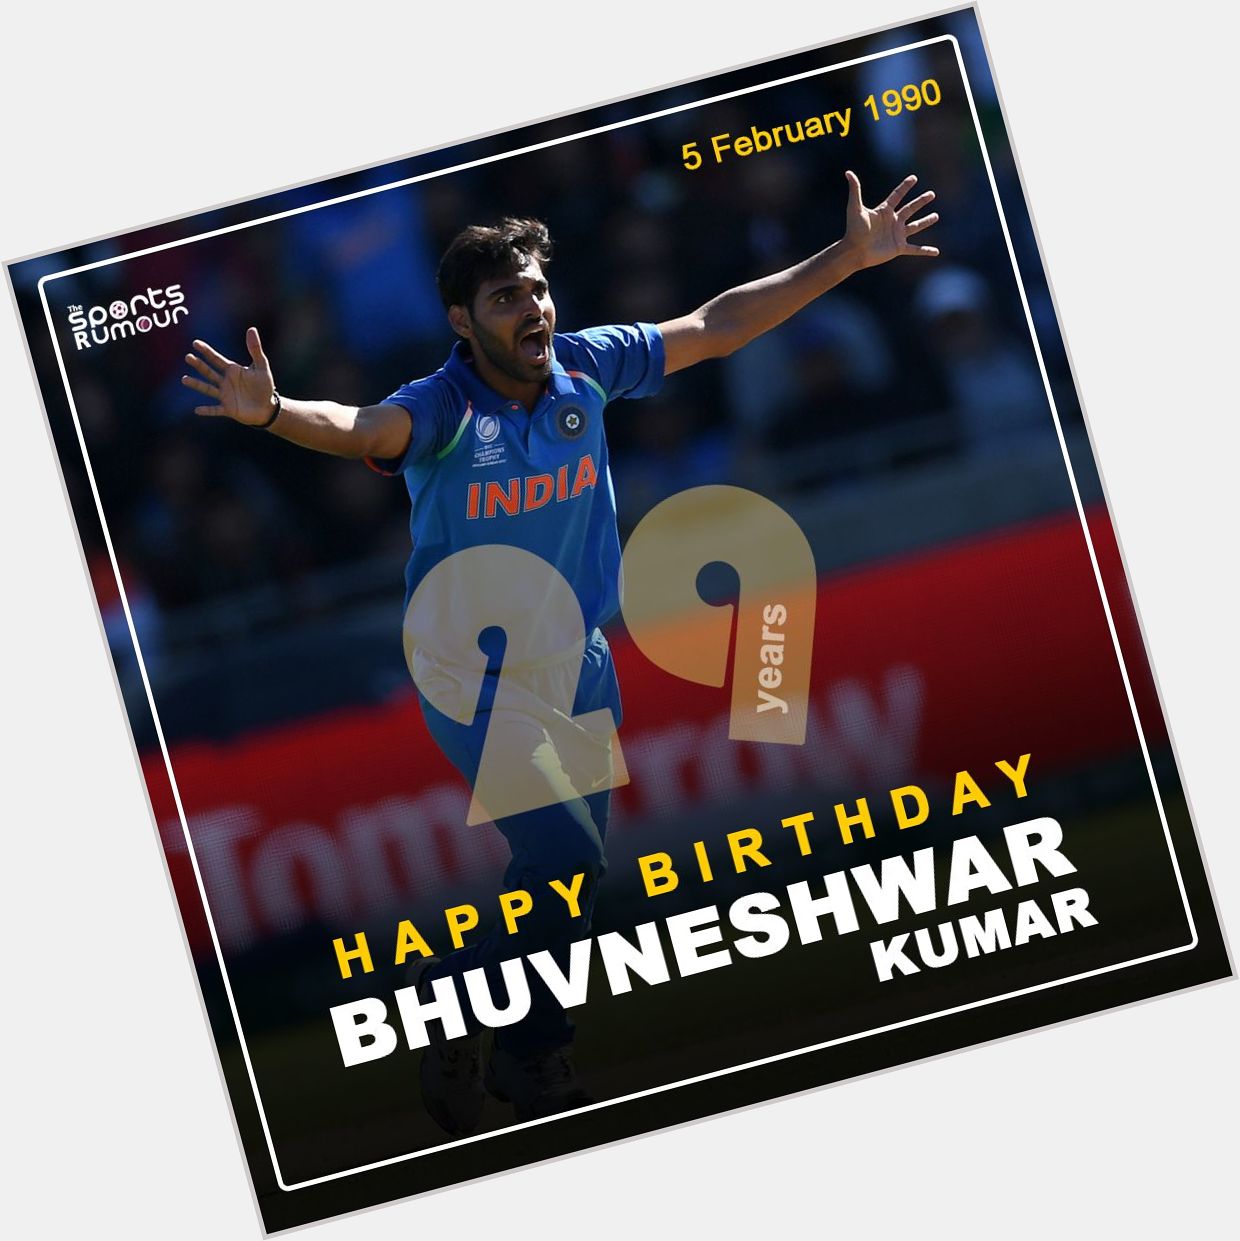 India s speedster Bhuvneshwar Kumar turns 29 today. Here s wishing him a very Happy Birthday! 